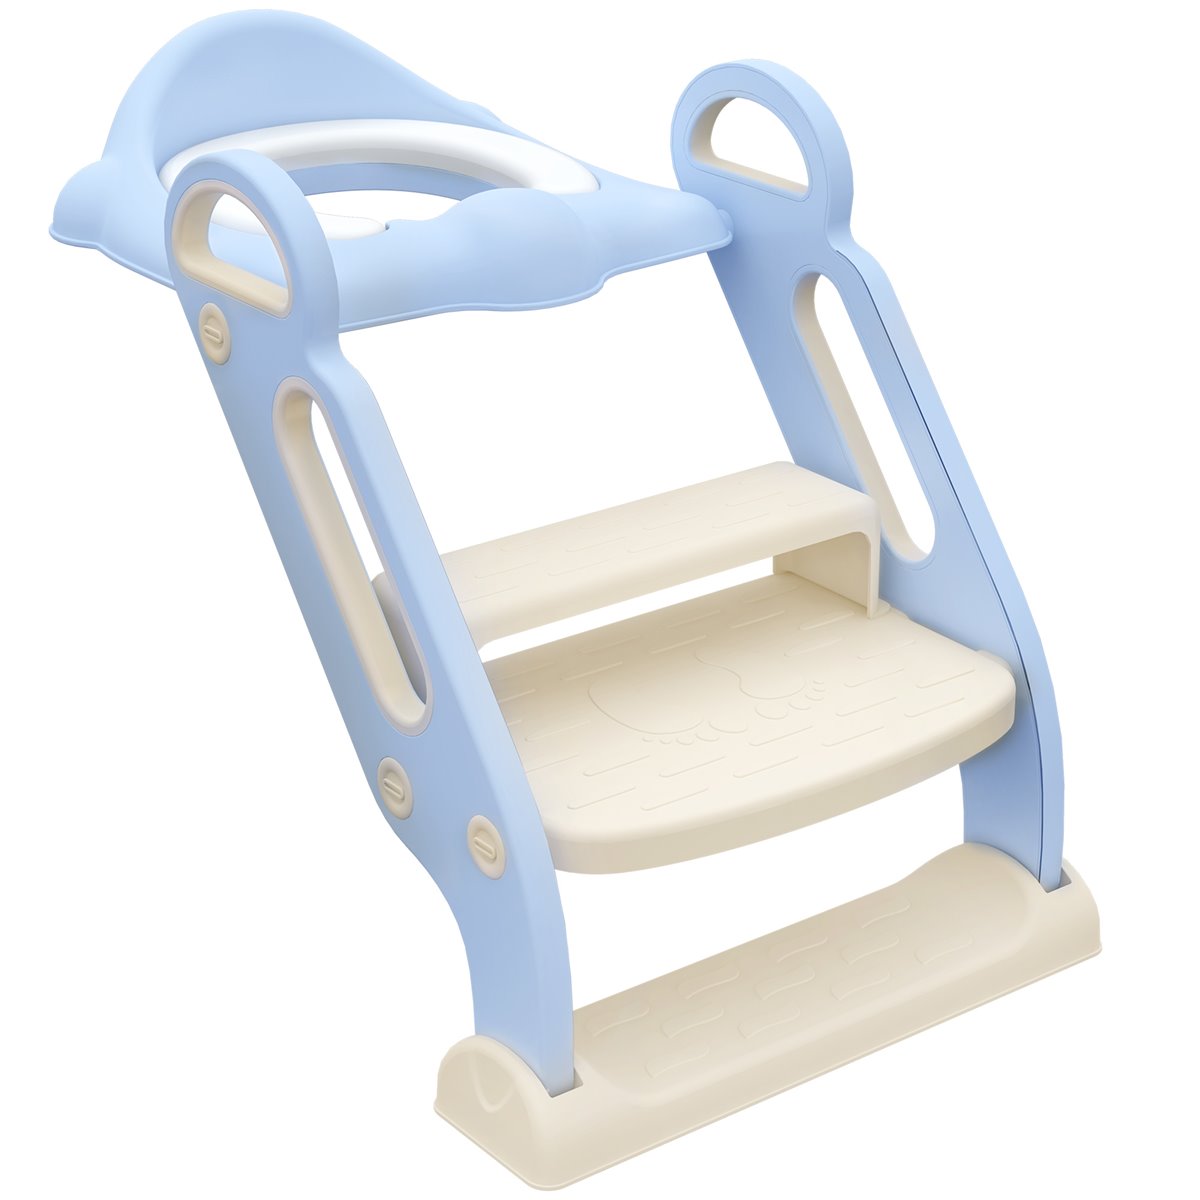 Adaptador de WC para niños asiento reductor infantil para inodoro en blanco